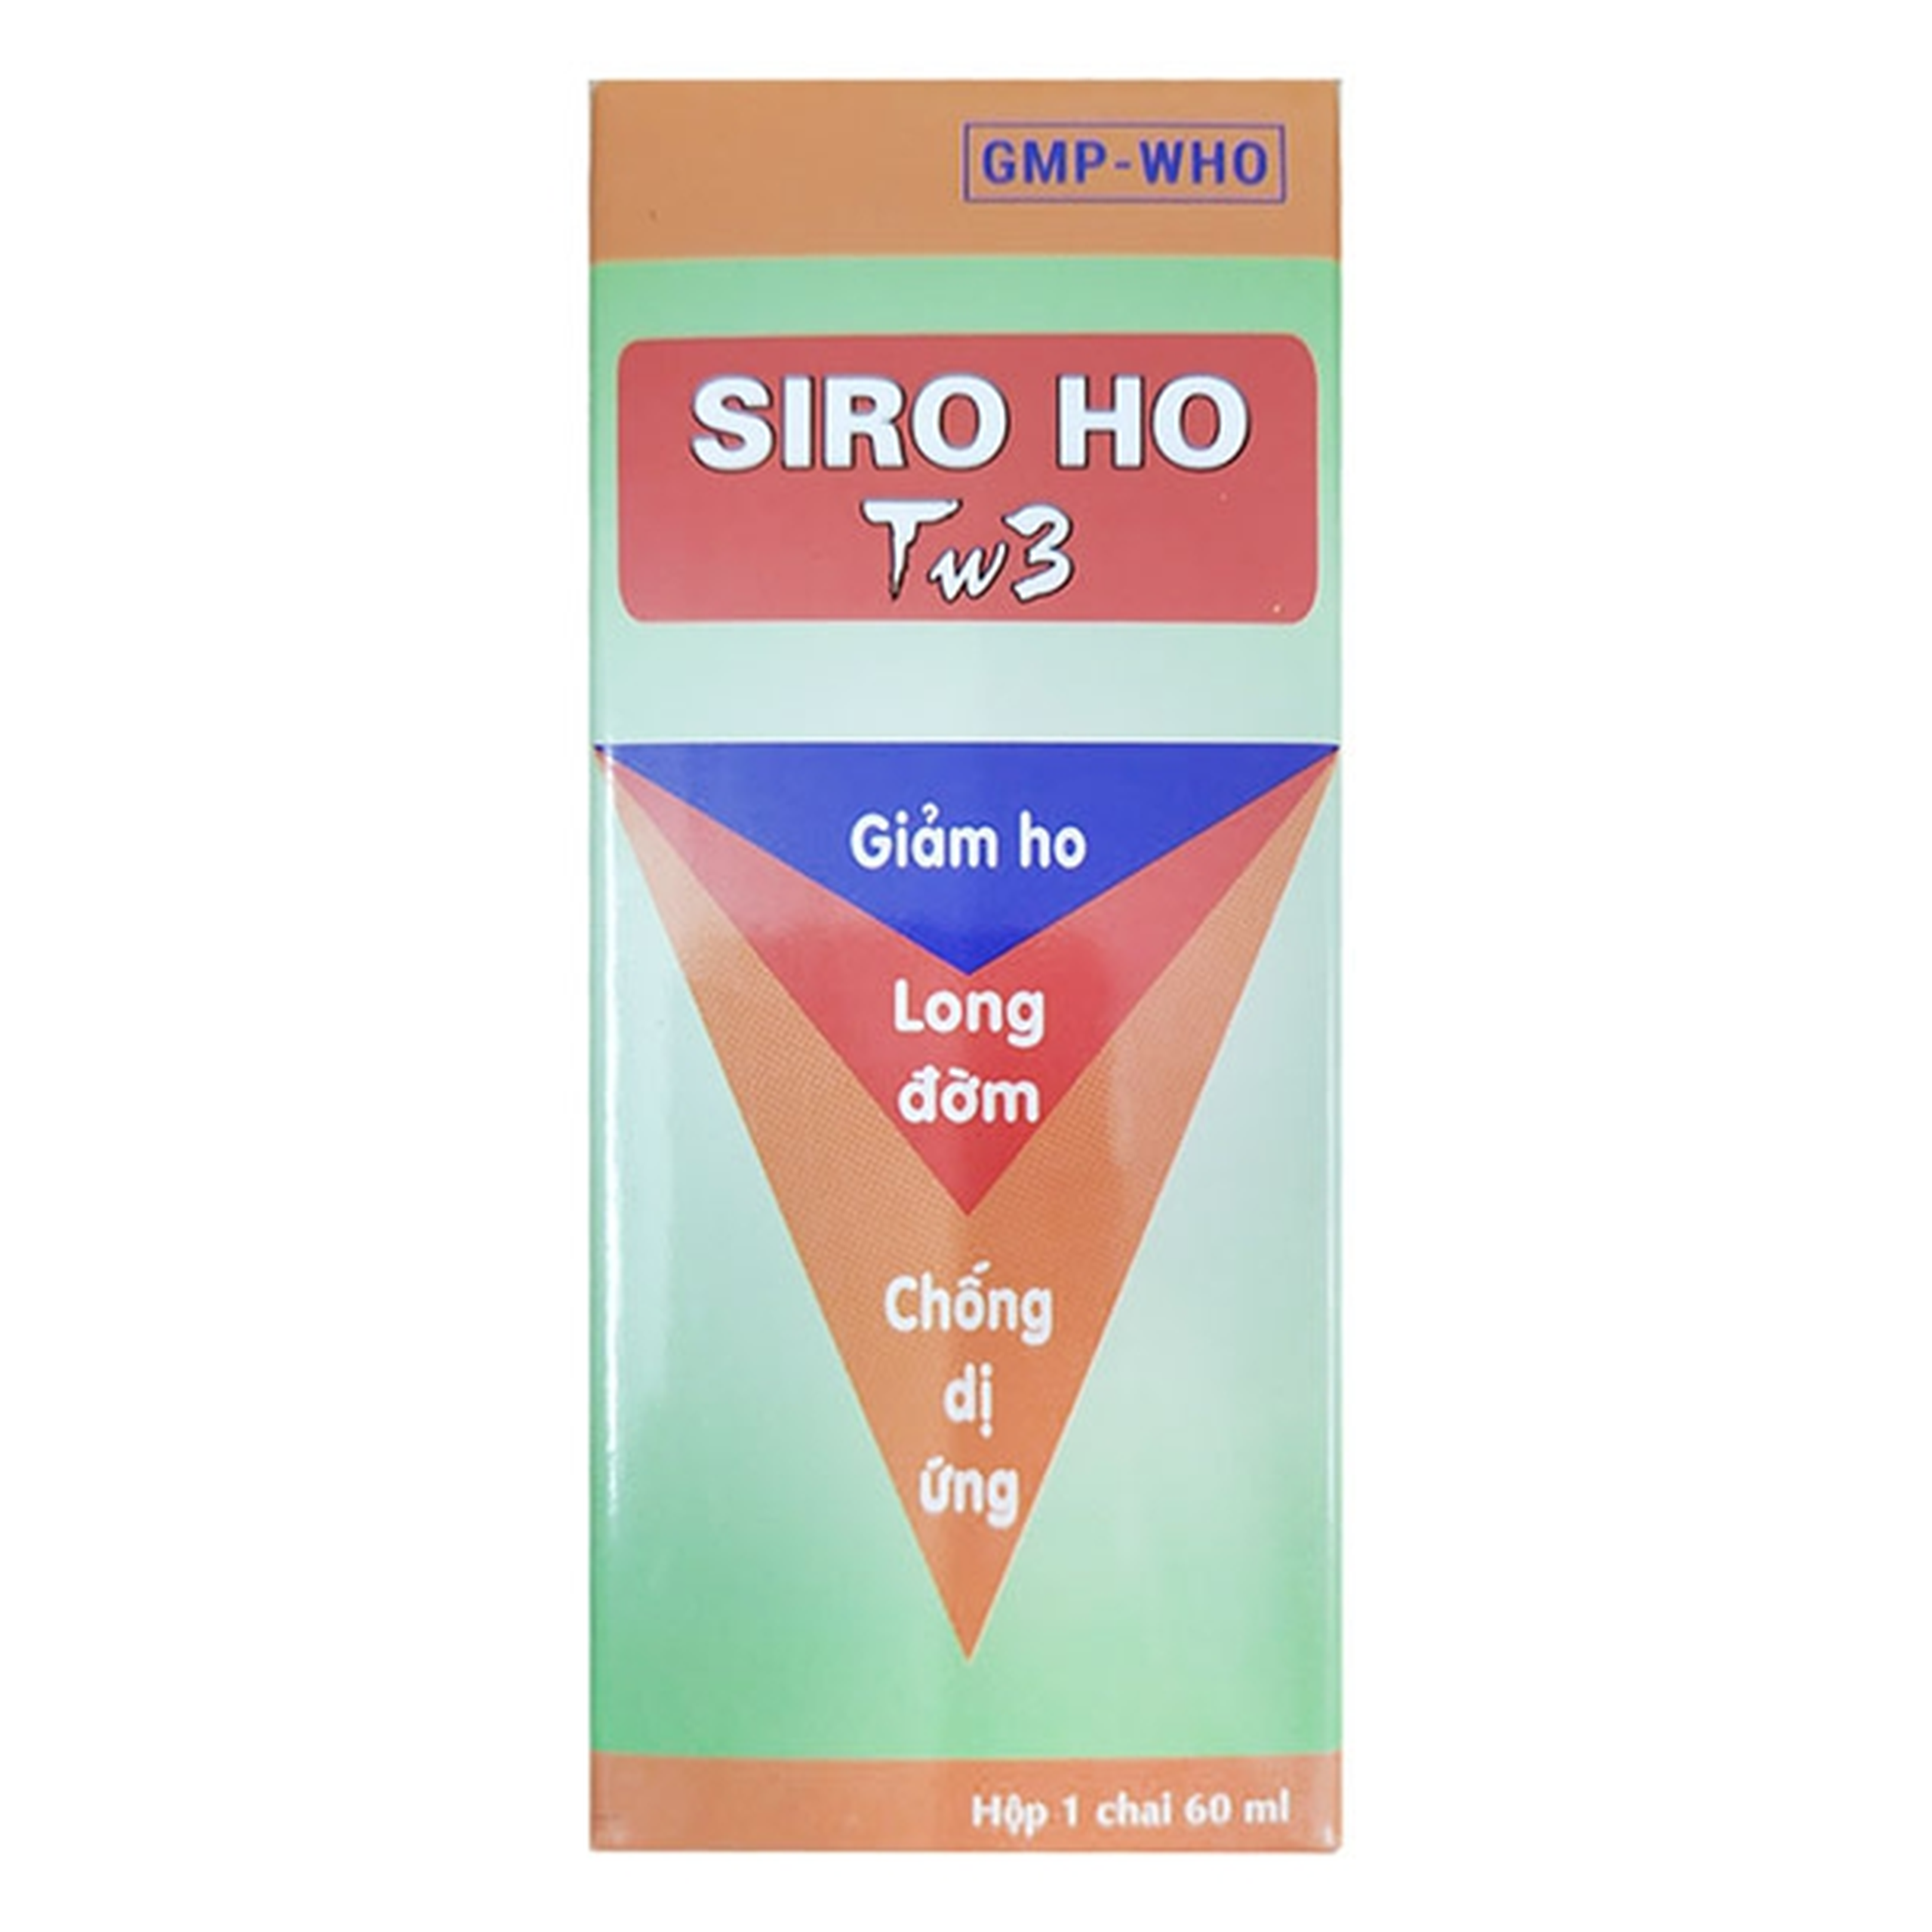 Siro ho TW3 giúp giảm ho, long đờm, chống dị ứng (60ml)